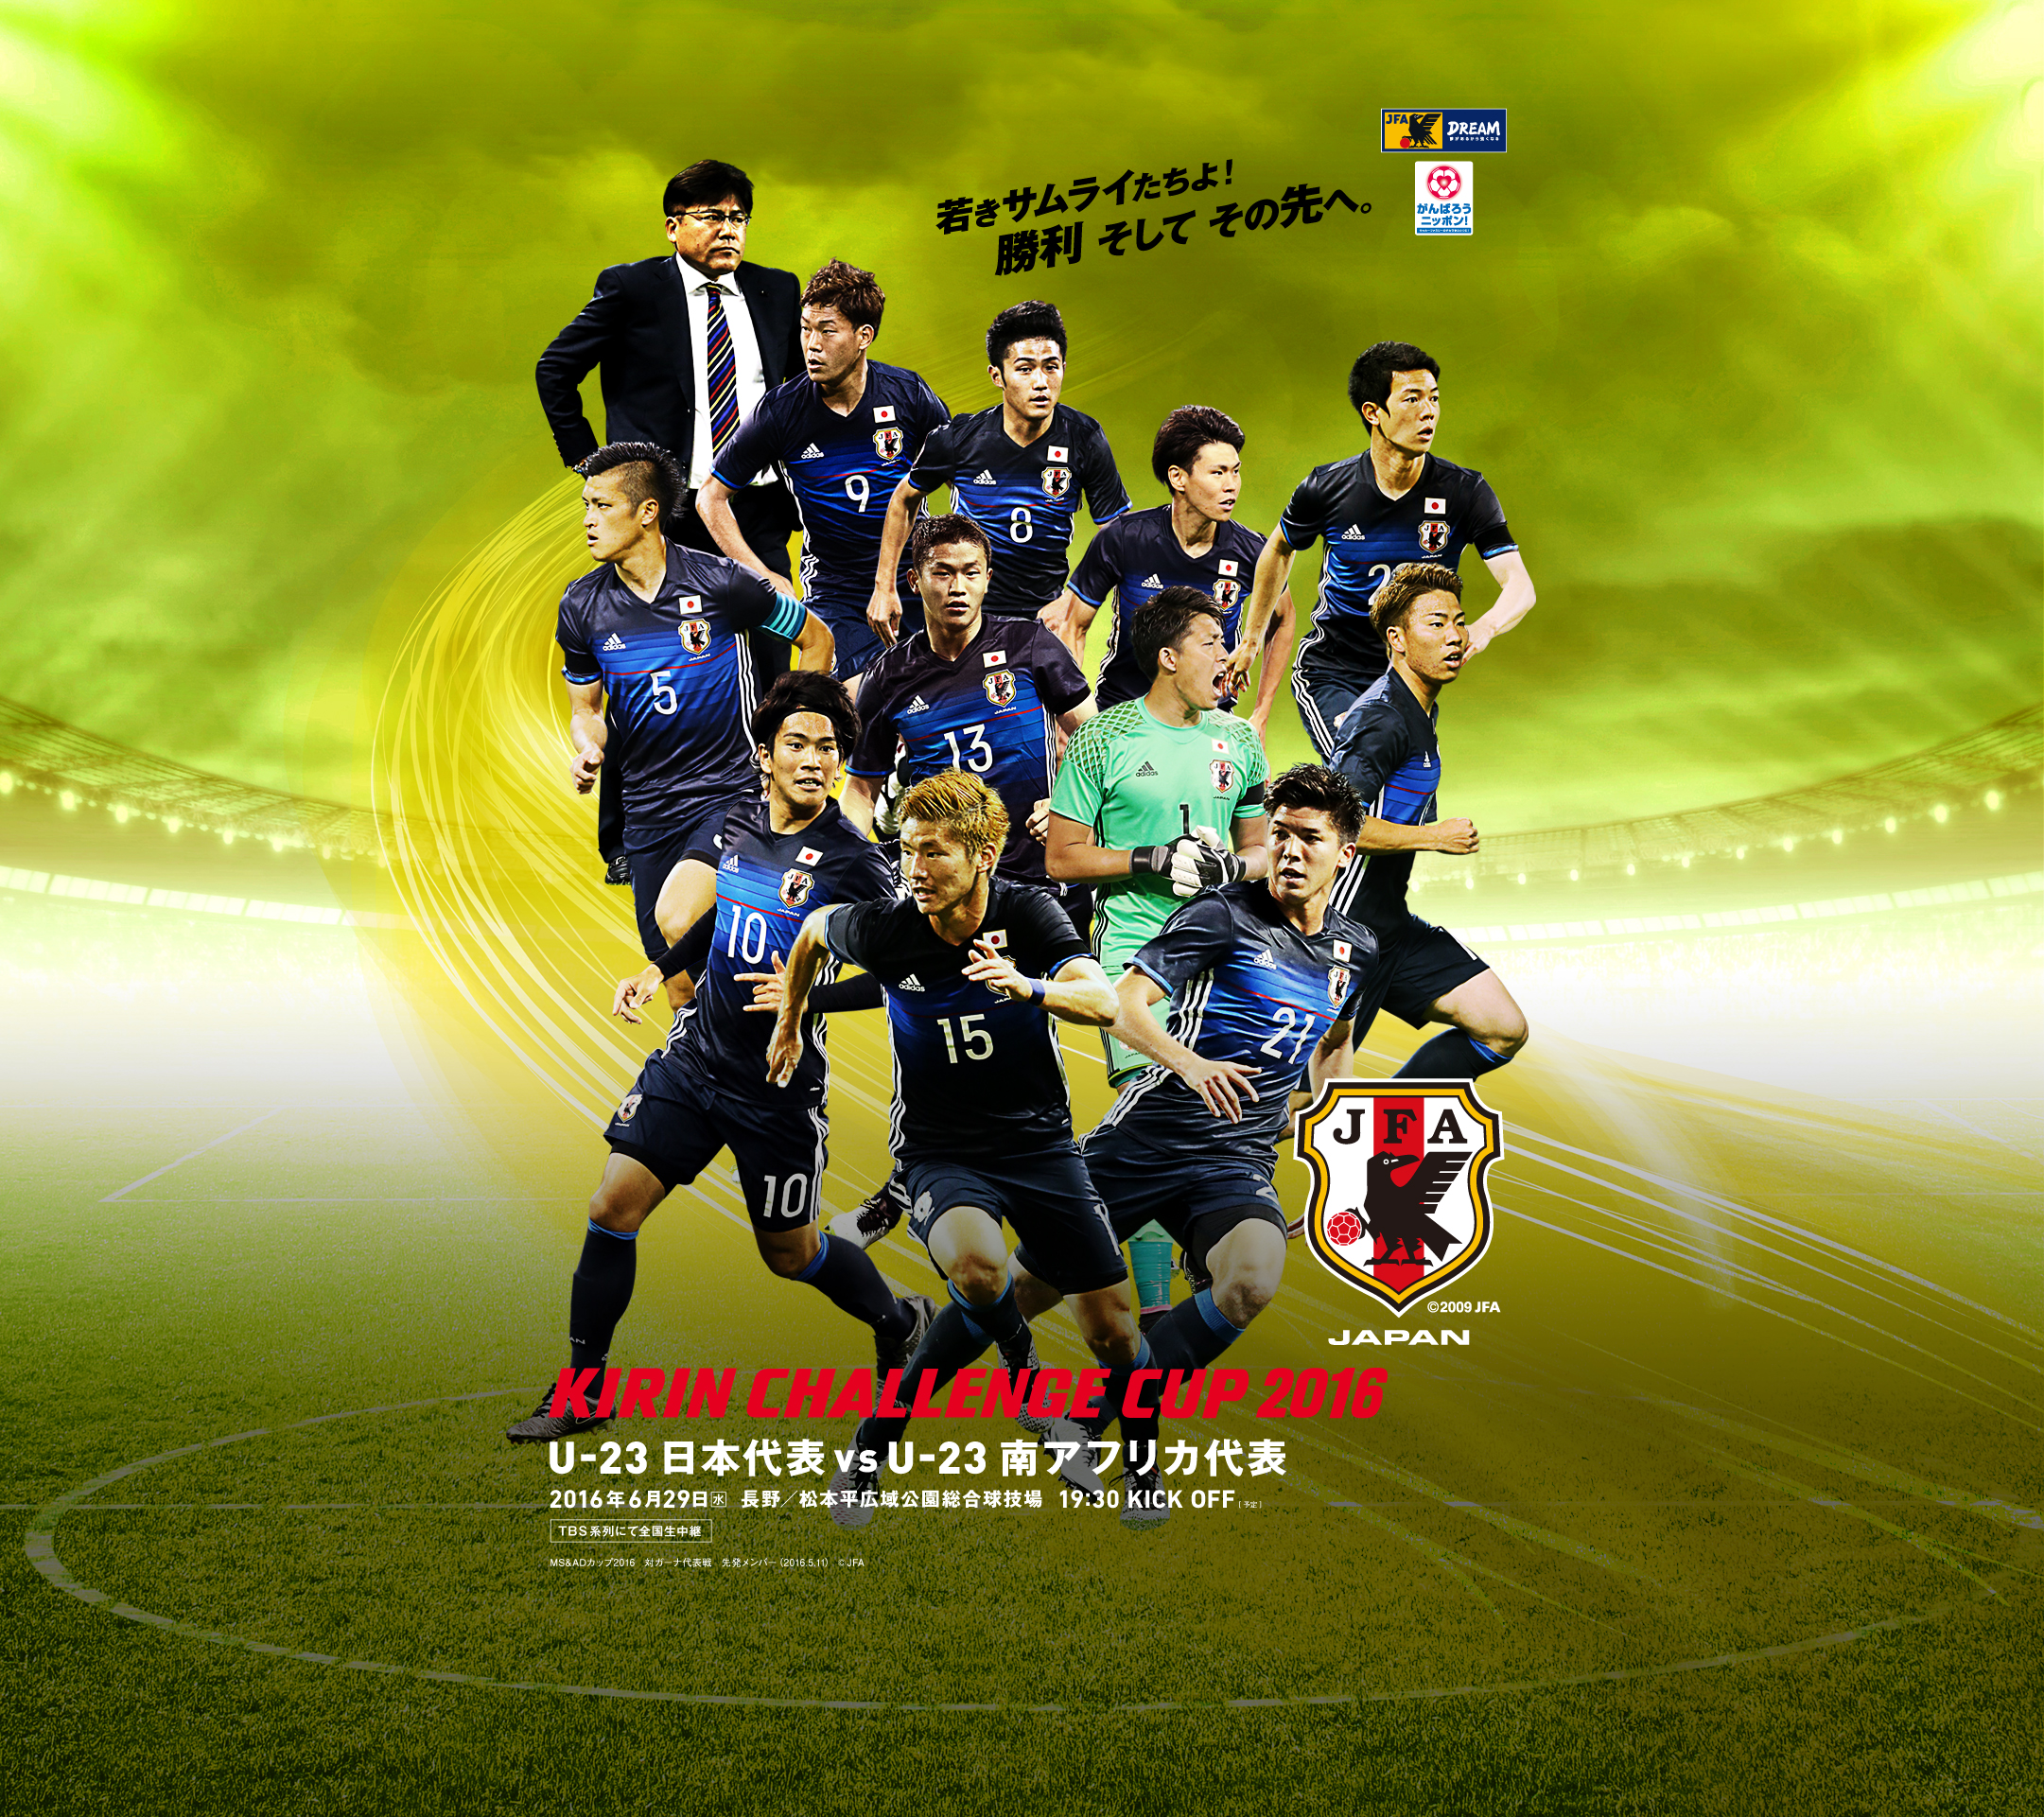 壁紙 ポスターダウンロード キリンチャレンジカップ2016 U 23 日本代表 Jfa 日本サッカー協会